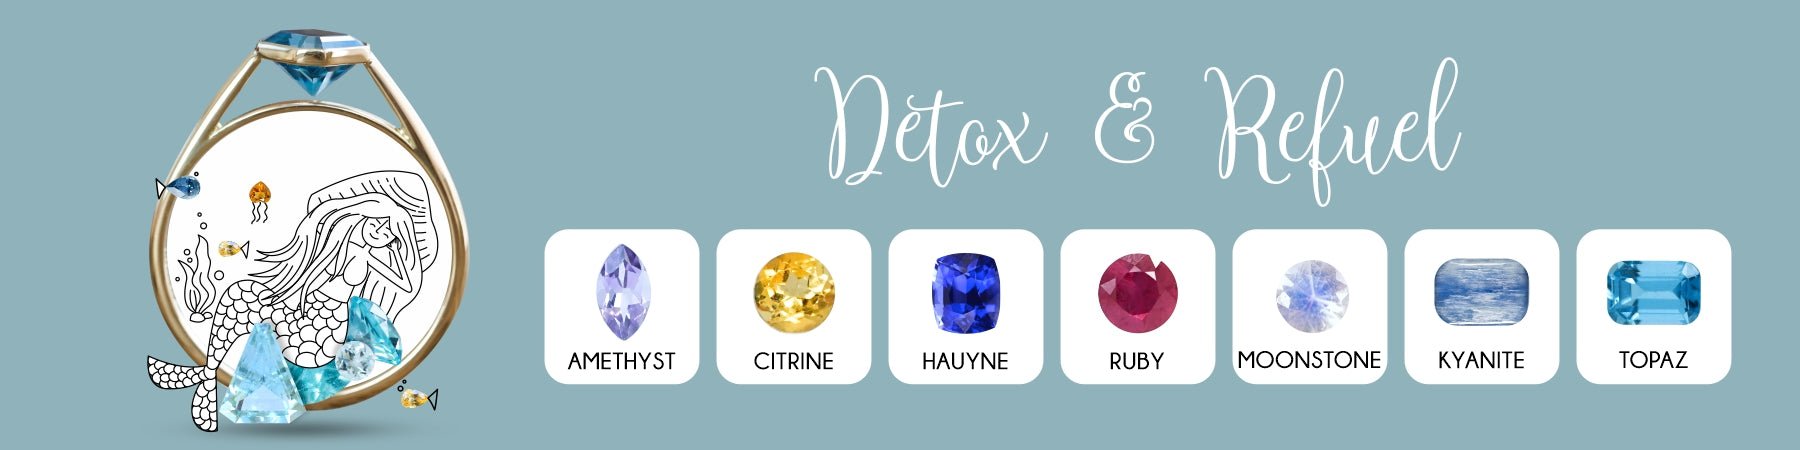 Detox & Refuel